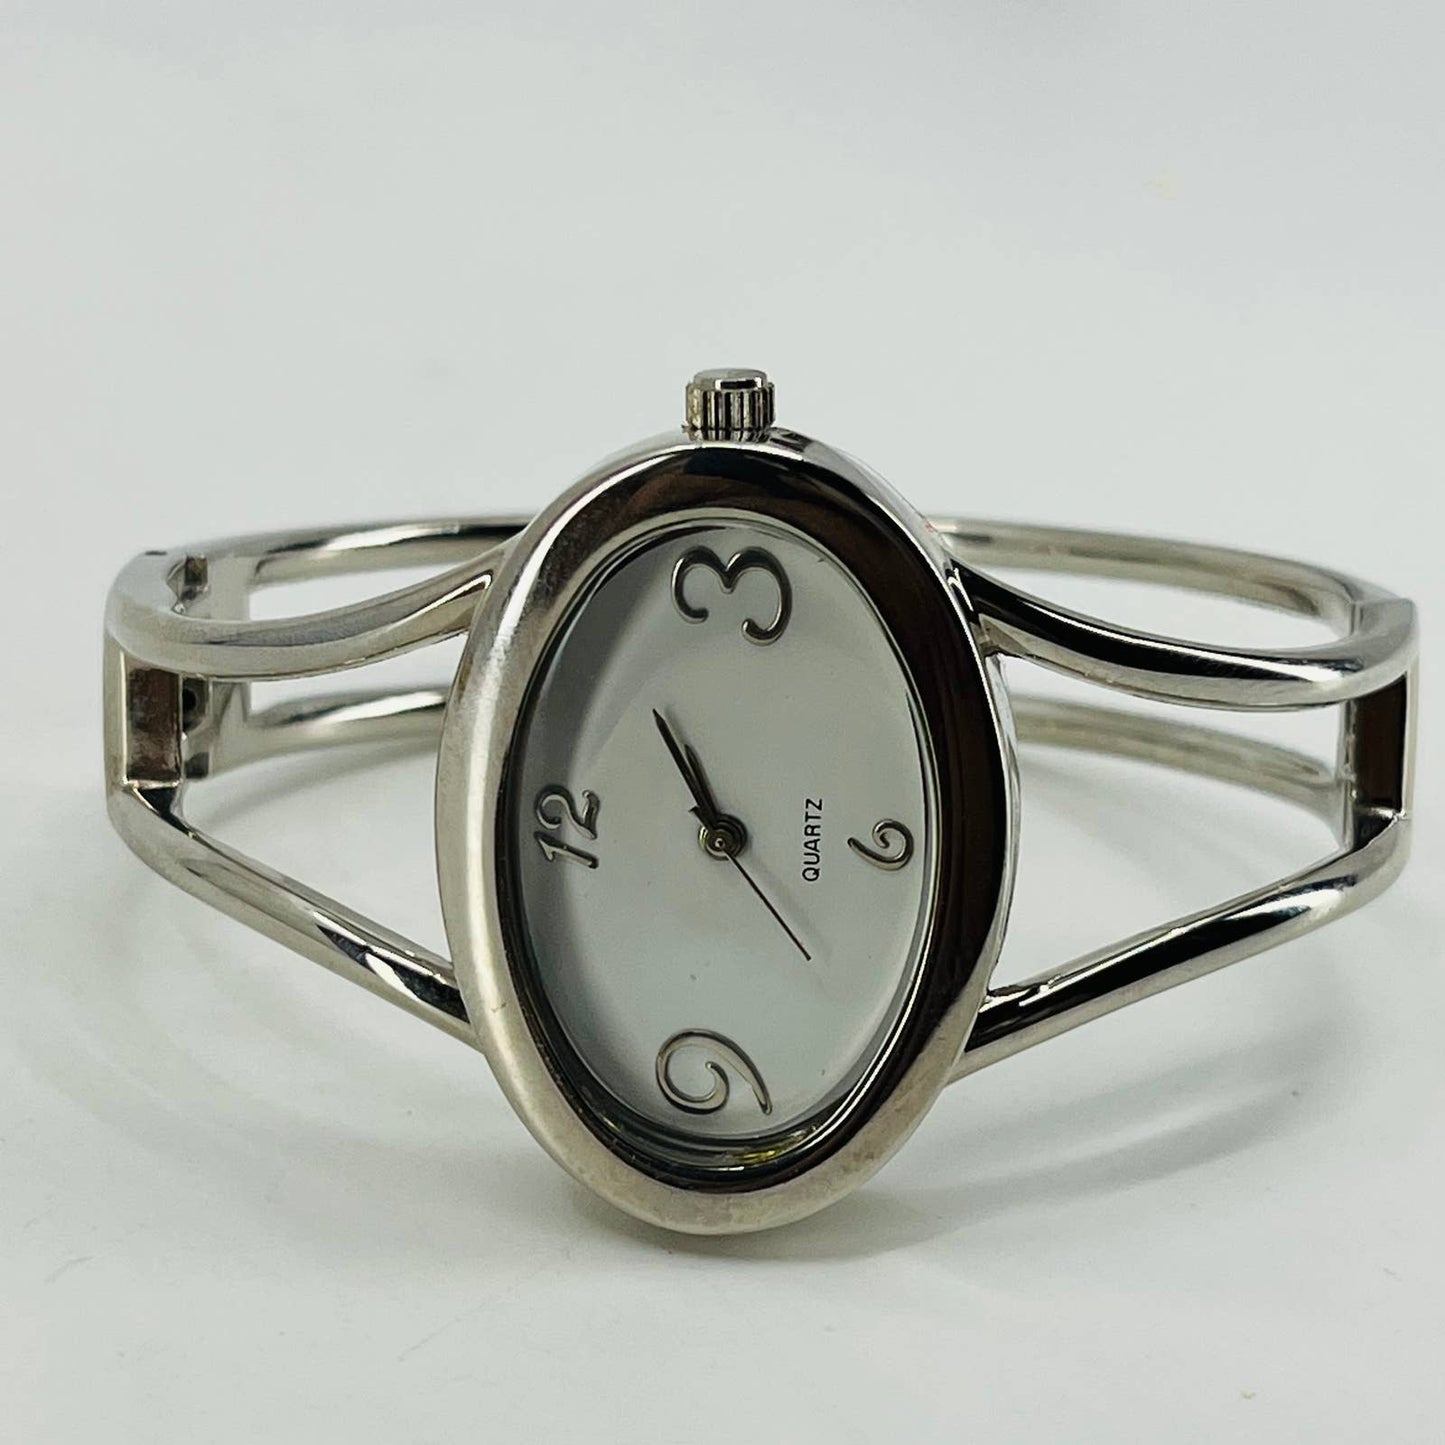 Vintage Silver Tone Watch Metal Bracelet Style Band SA9